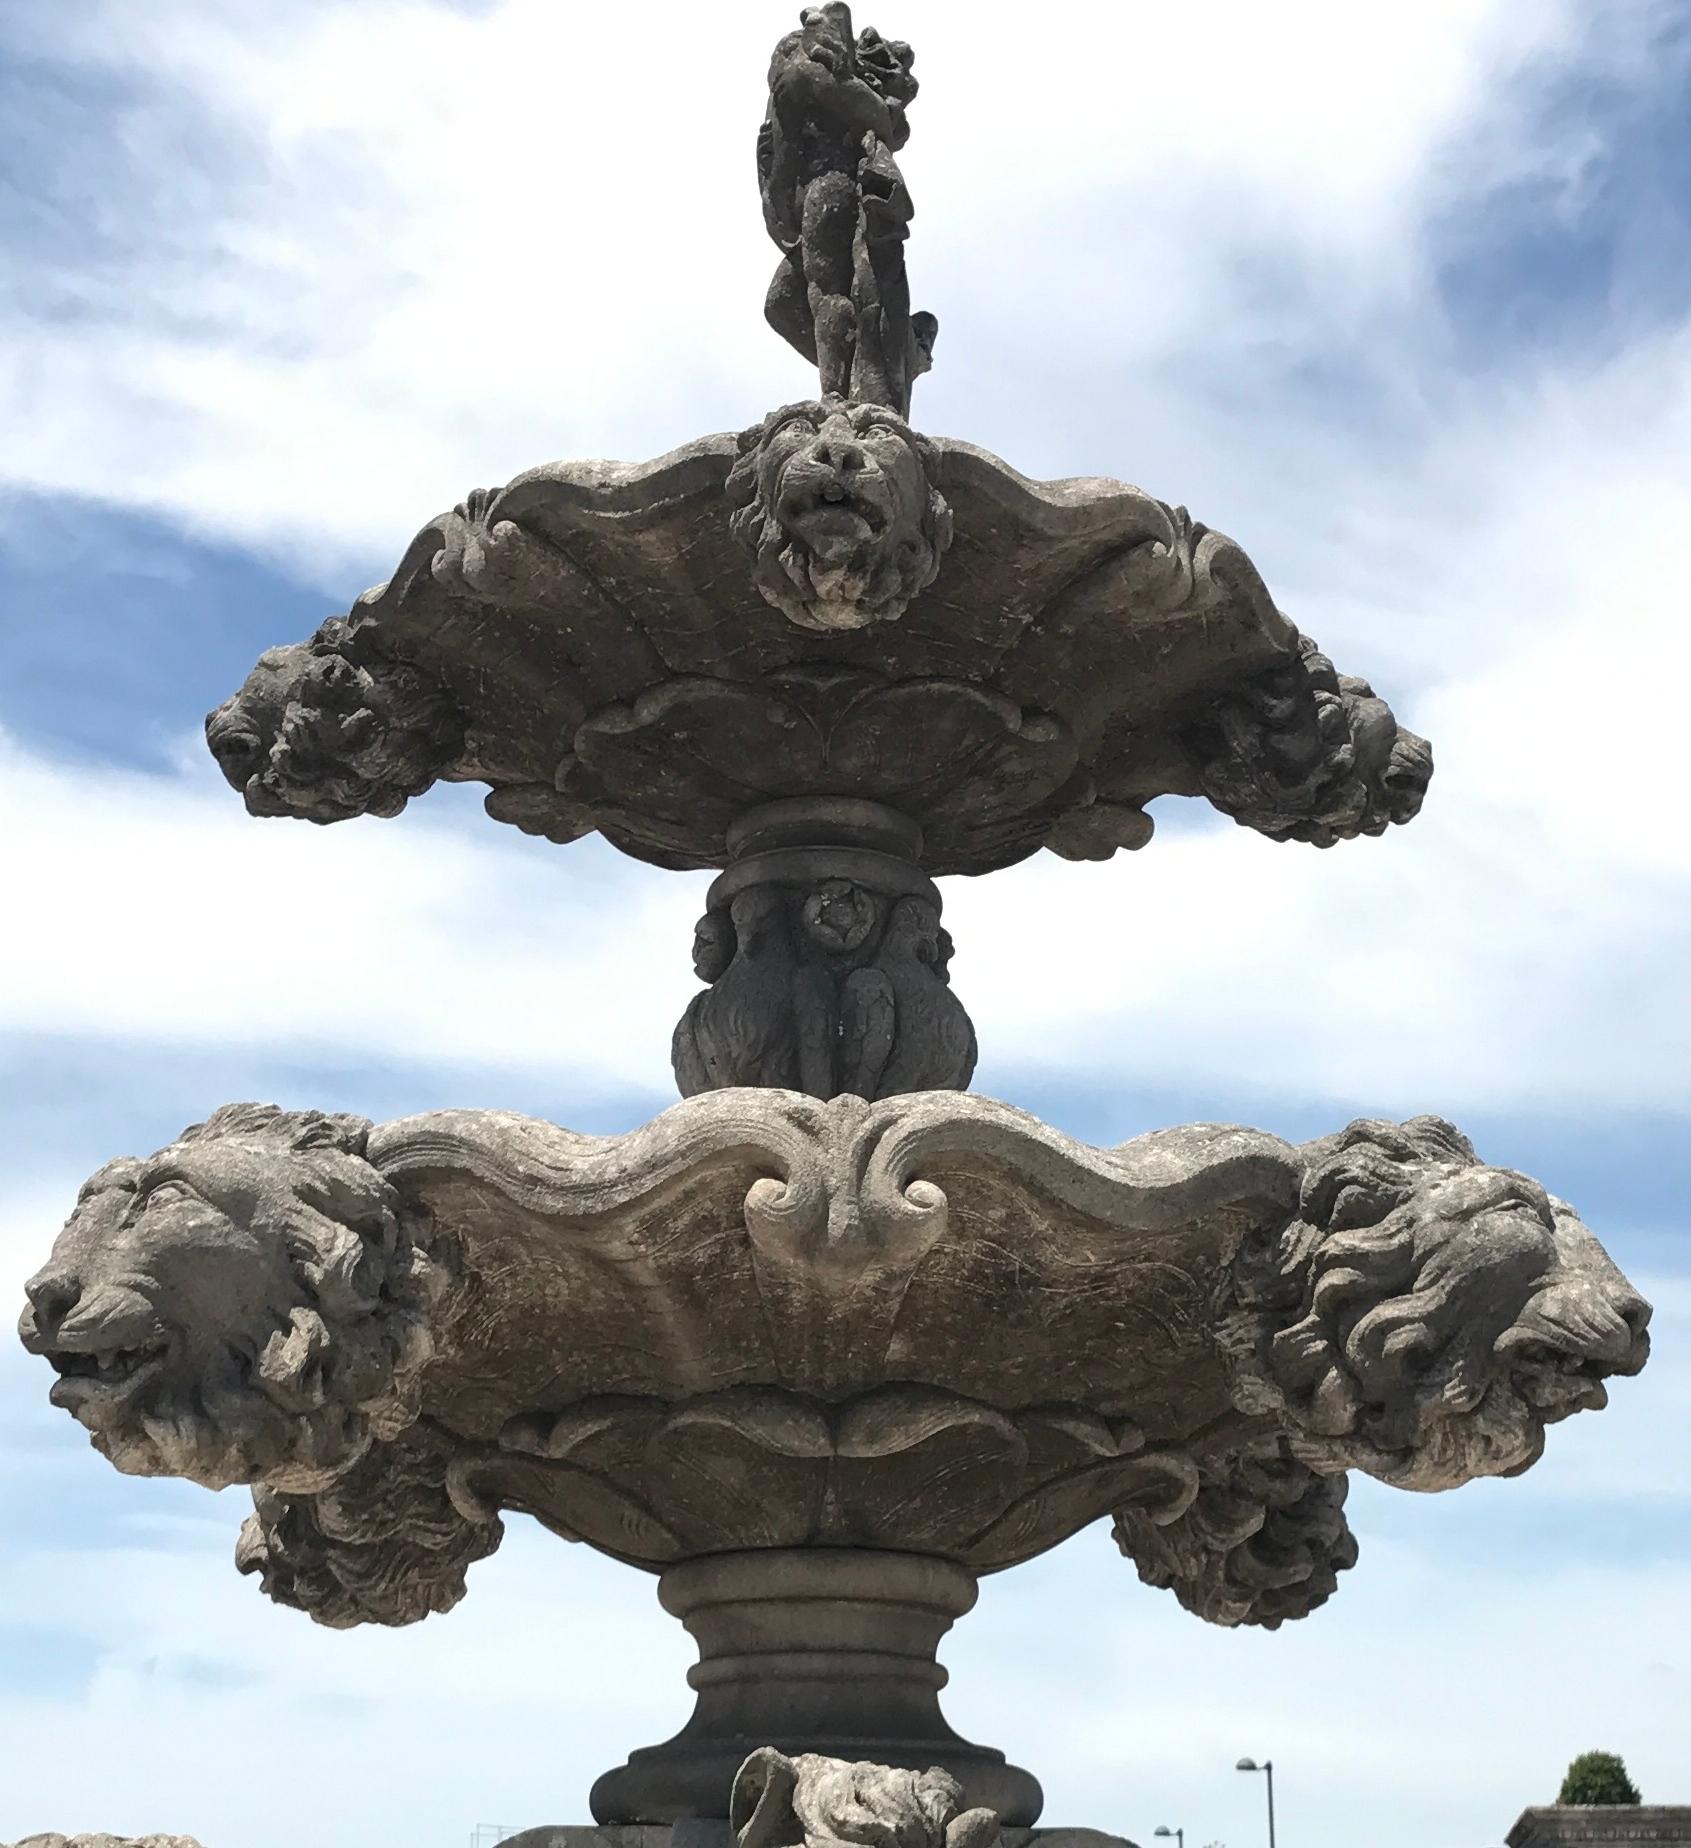 Dieser monumentale, fein gearbeitete Kalksteinbrunnen besteht aus drei Ebenen.
Auf der ersten Ebene befinden sich drei erstaunliche Pferdestatuen, die anderen sind mit Löwenköpfen geschmückt und enden mit einer Putto-Figur. Hervorragende Dekoration